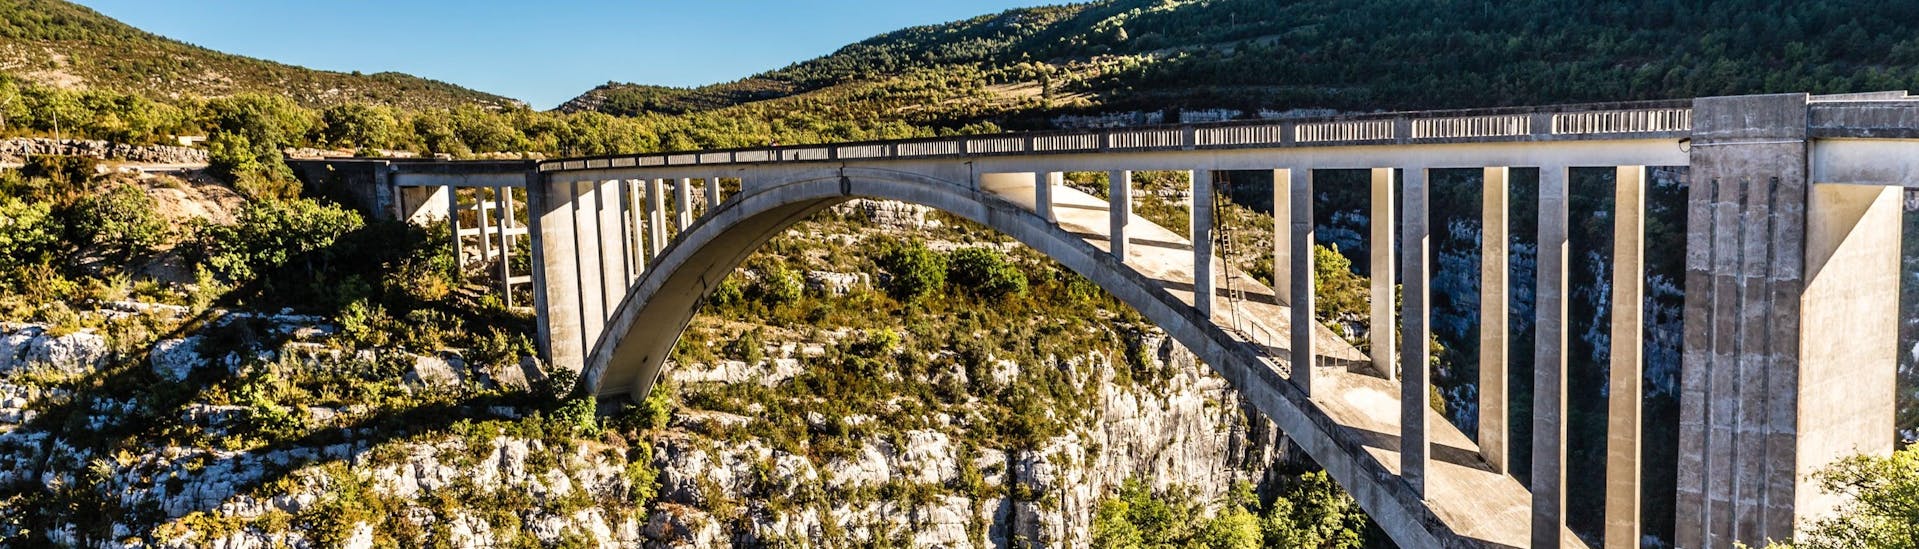 Vue du pont de l'Artuby dans les Gorges du Verdon, l'un des lieux les plus populaires en France pour faire du saut à l'élastique.